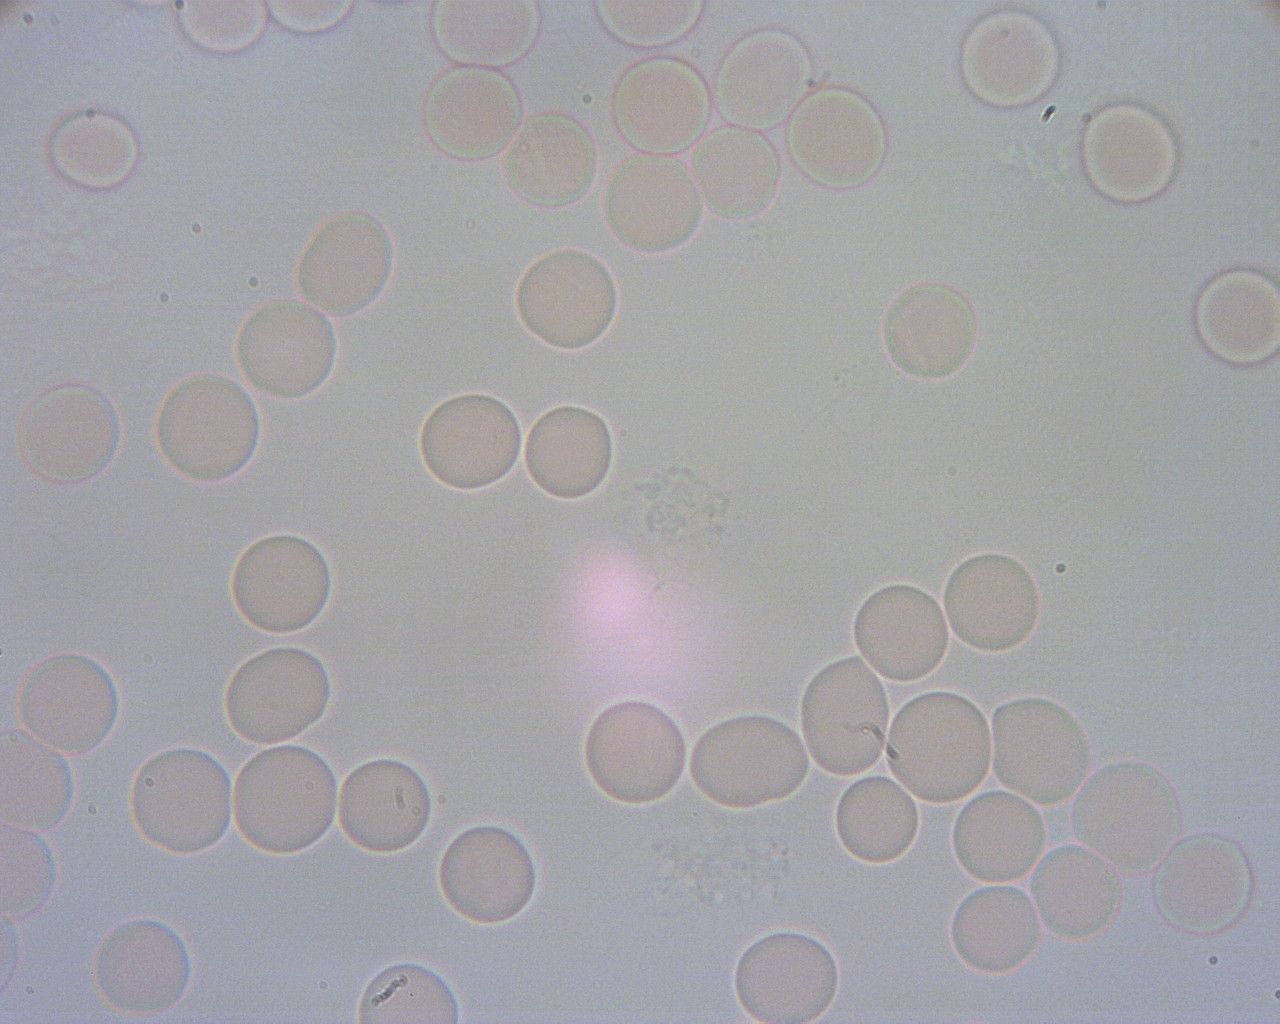 Prawidłowy obraz krwi pod mikroskopem. Widać rozklejone erytrocyty